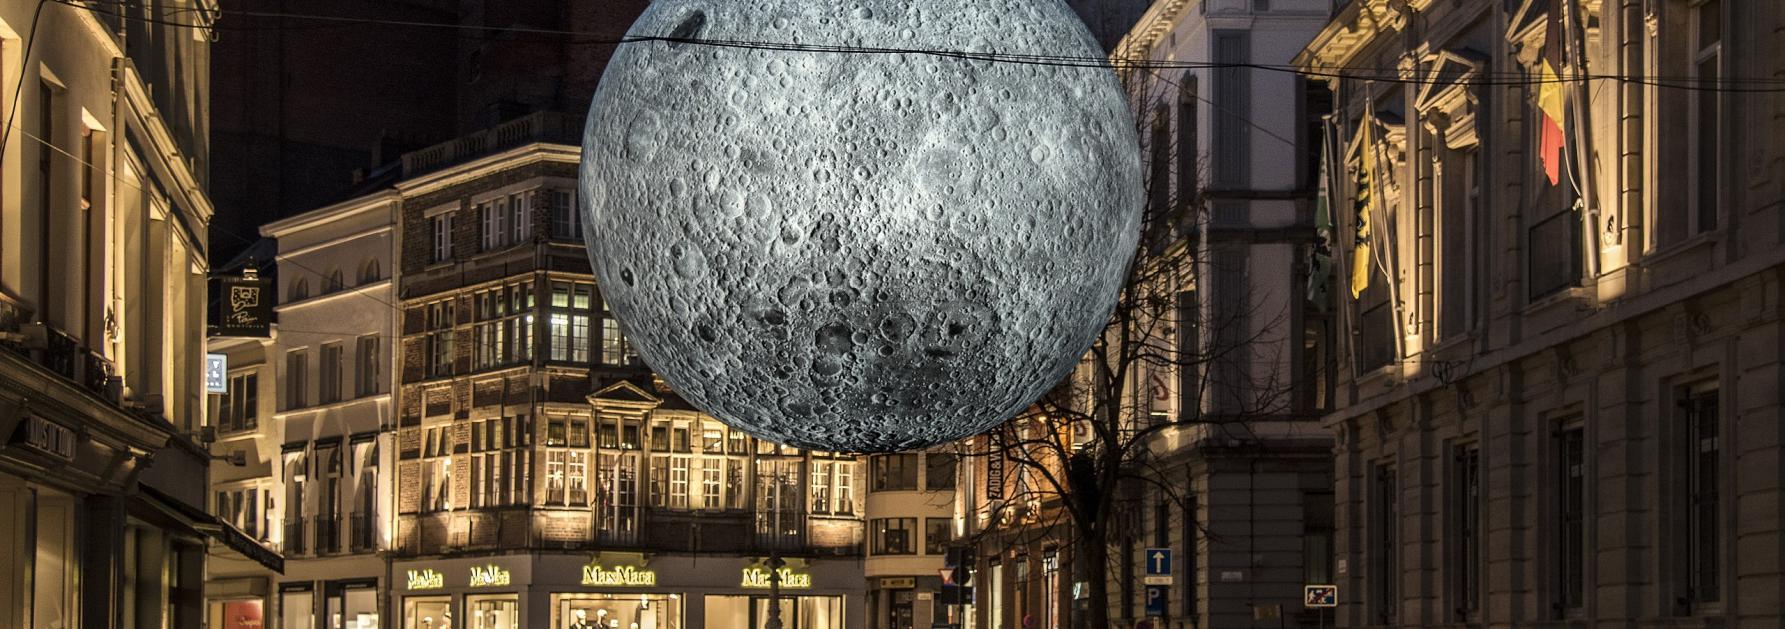 Lichtgevende maan in Gent